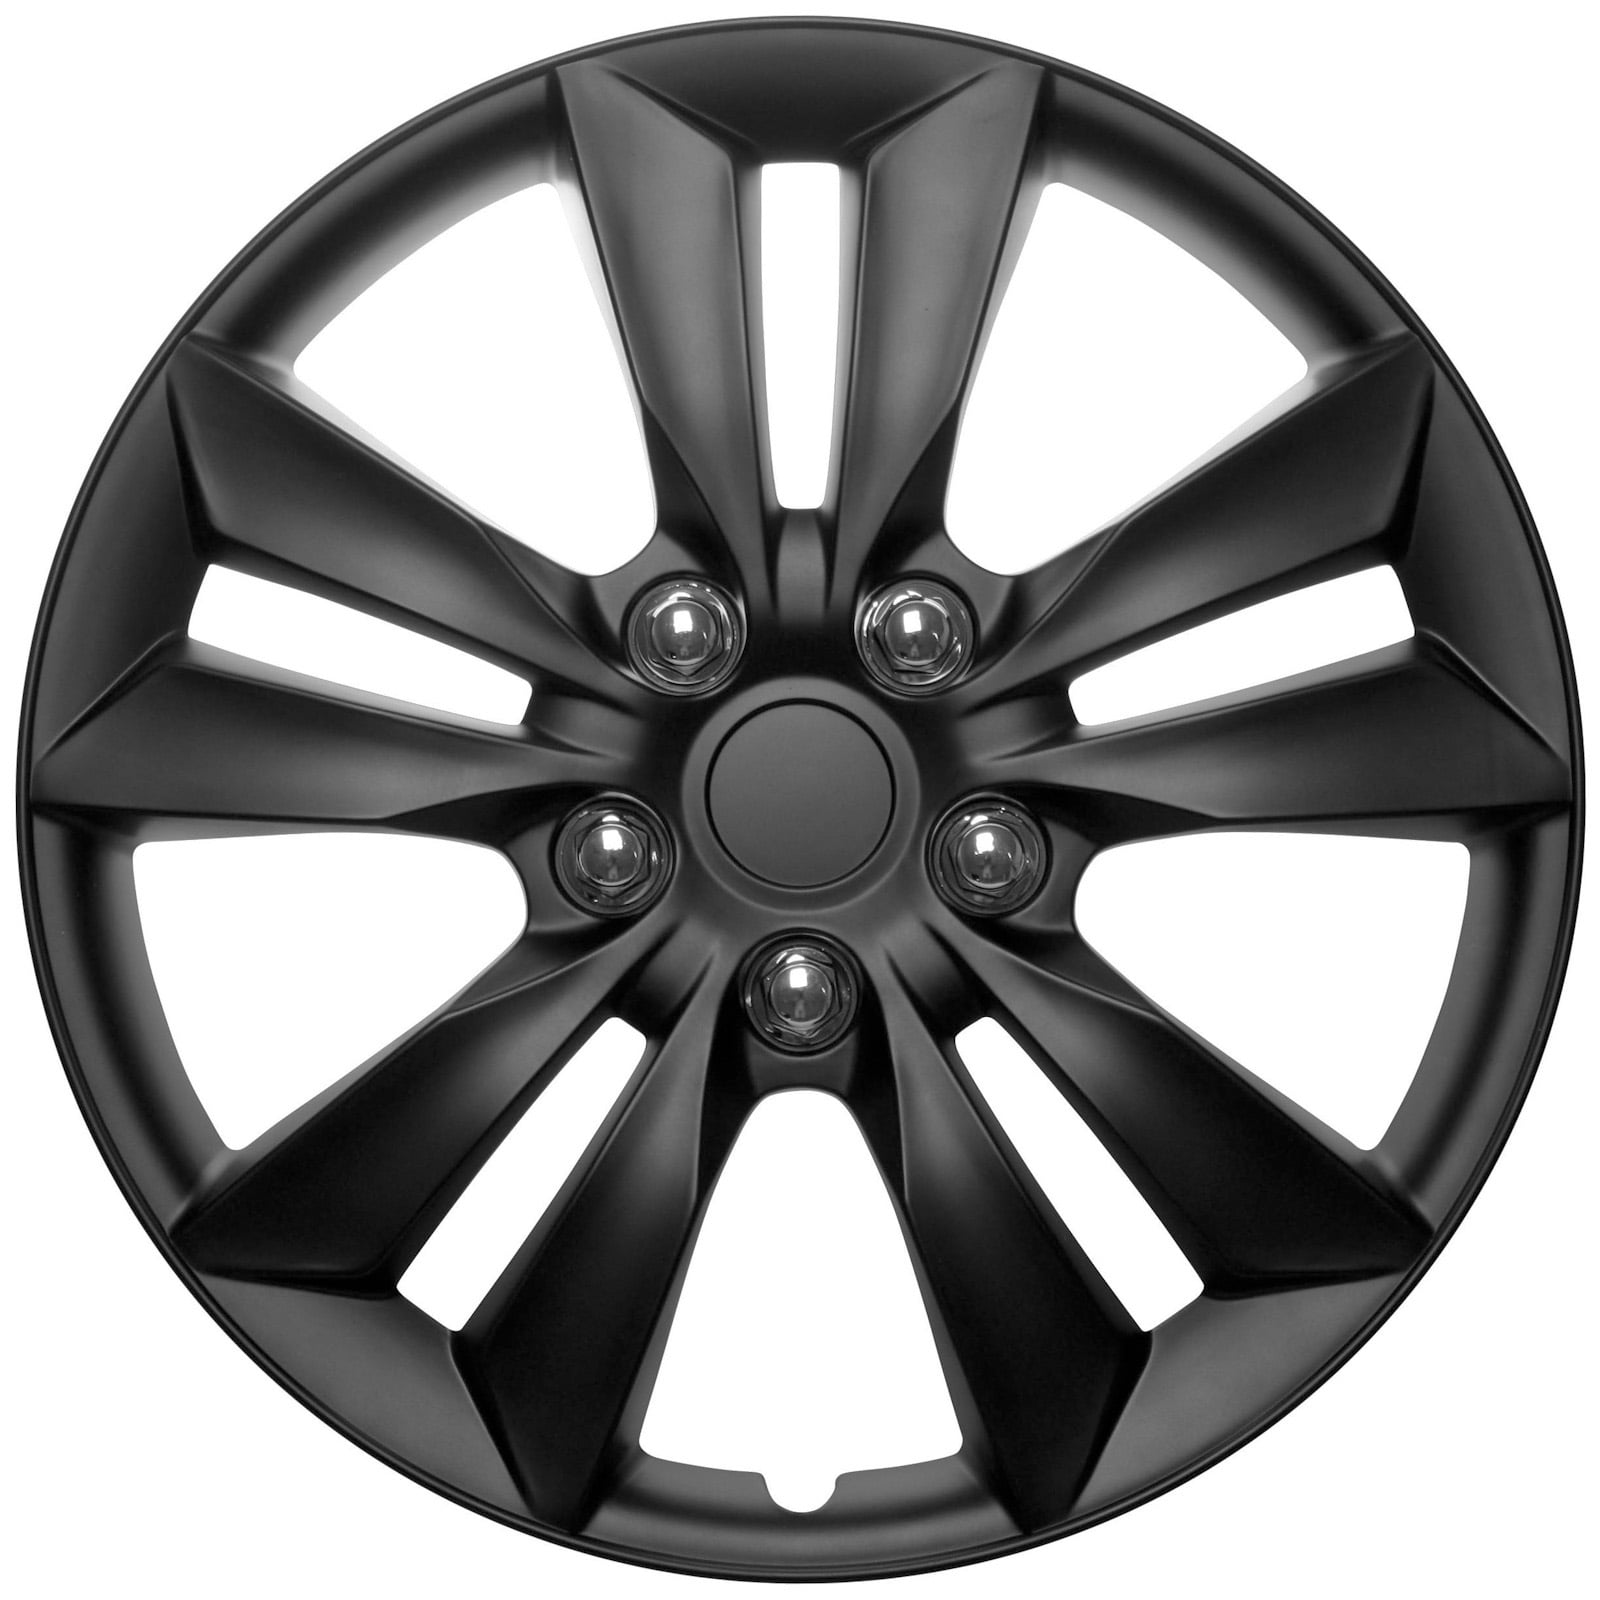 4 Pc Set of 16" Matte Black Hub Caps Rim Cover for OEM Steel Wheel Covers Cap 